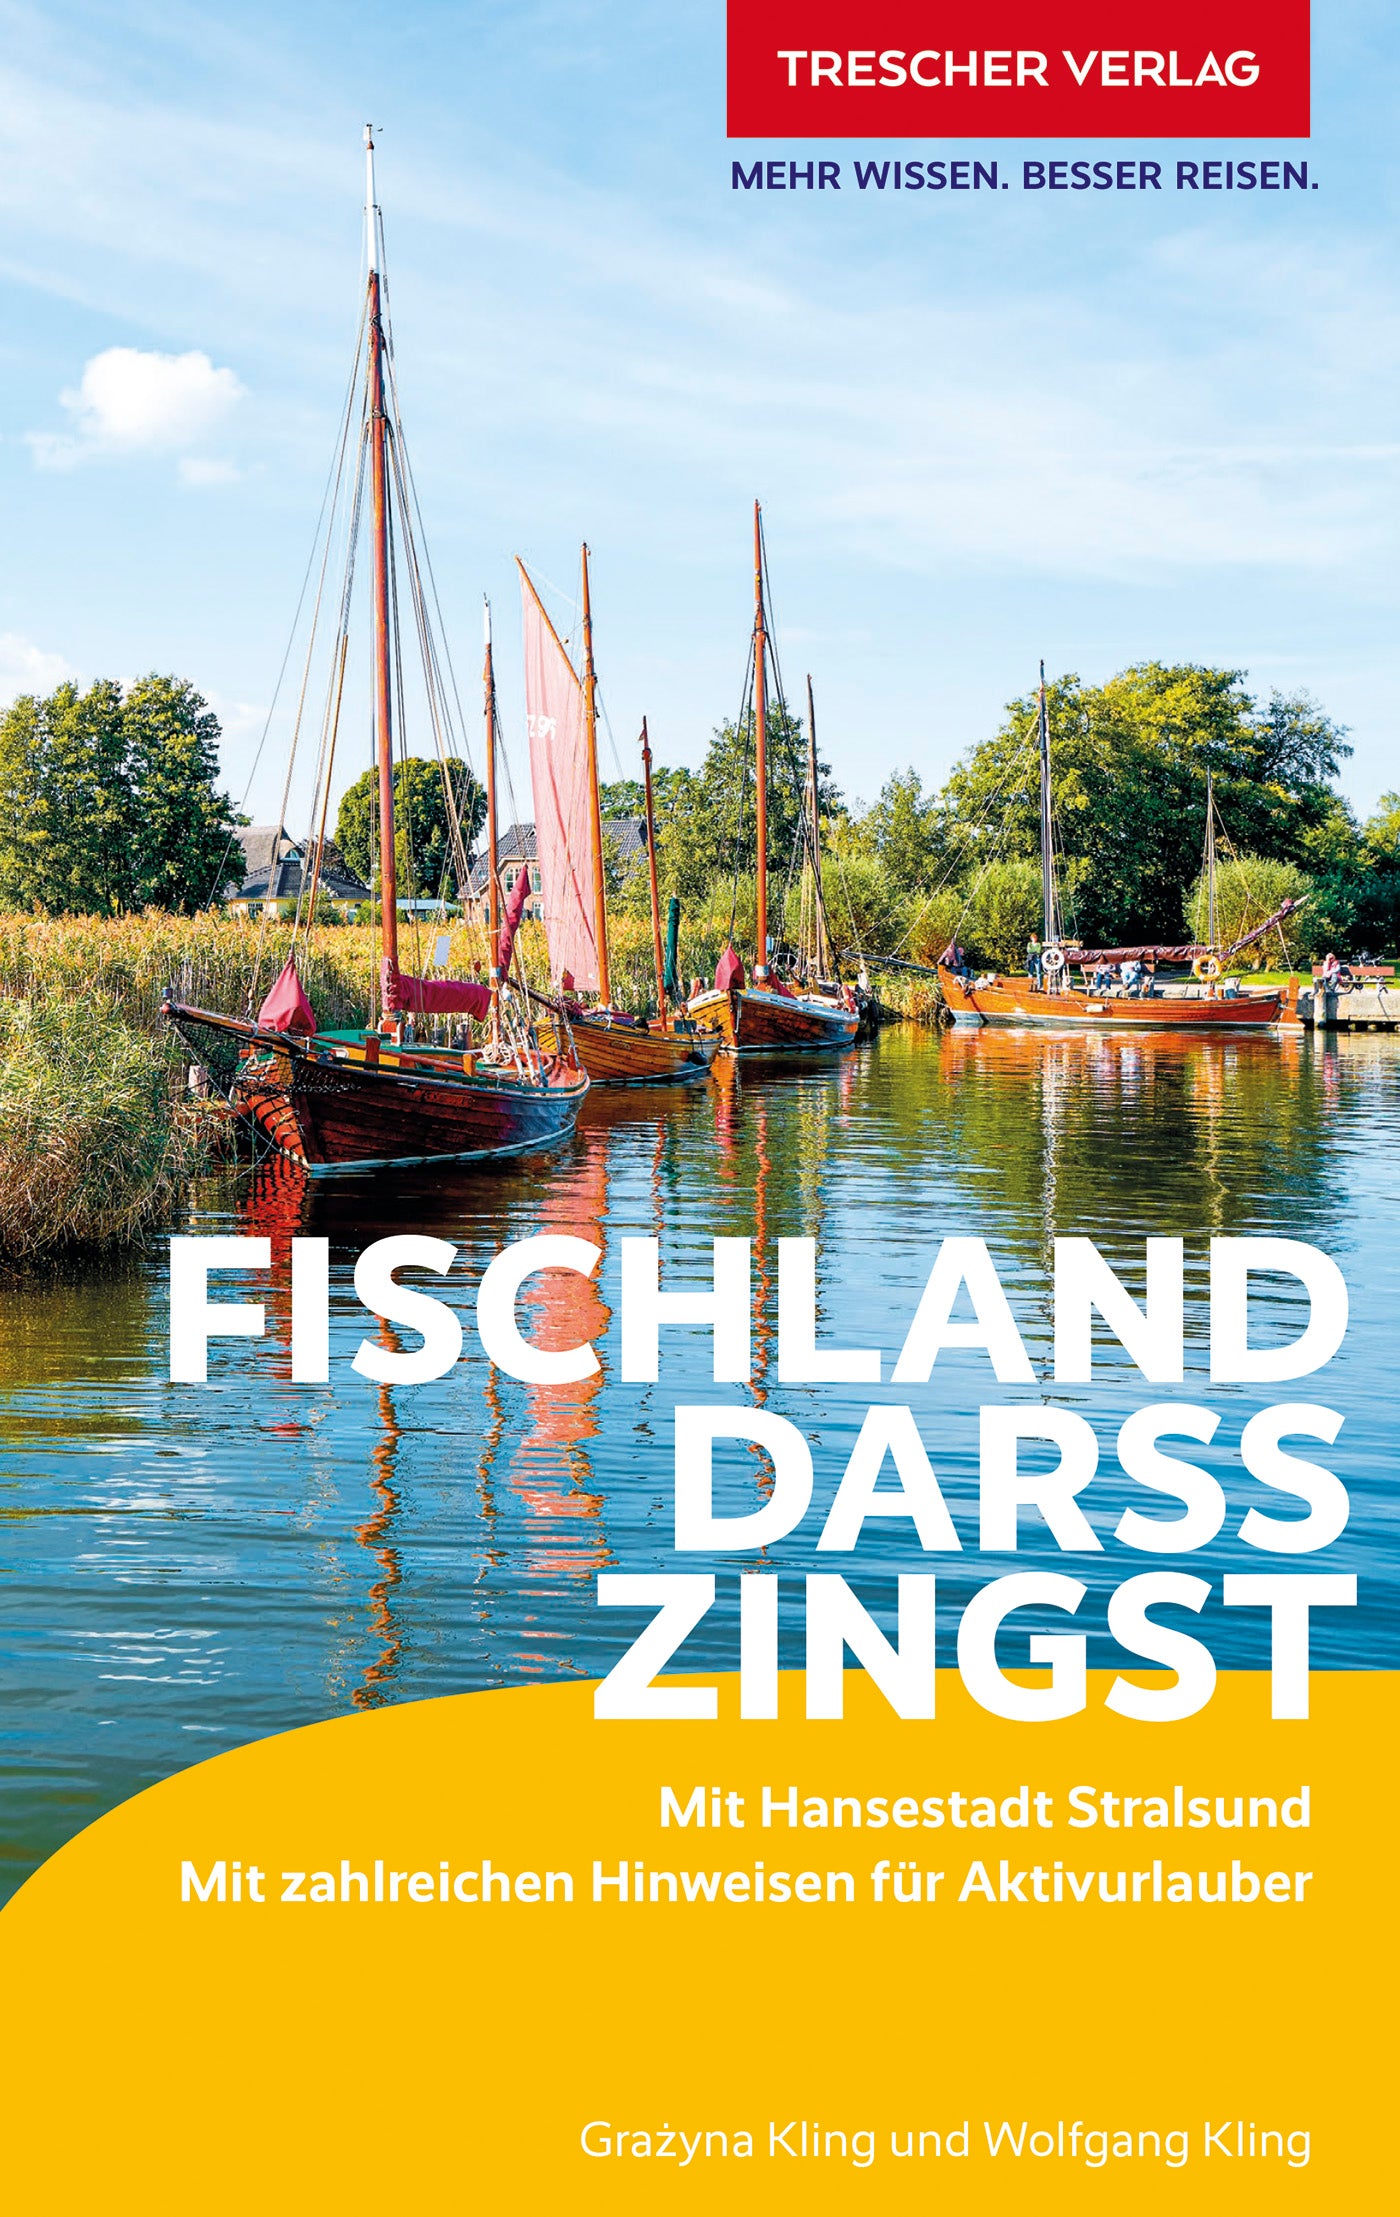 Fischland, Darß, Zingst - Trescher Verlag